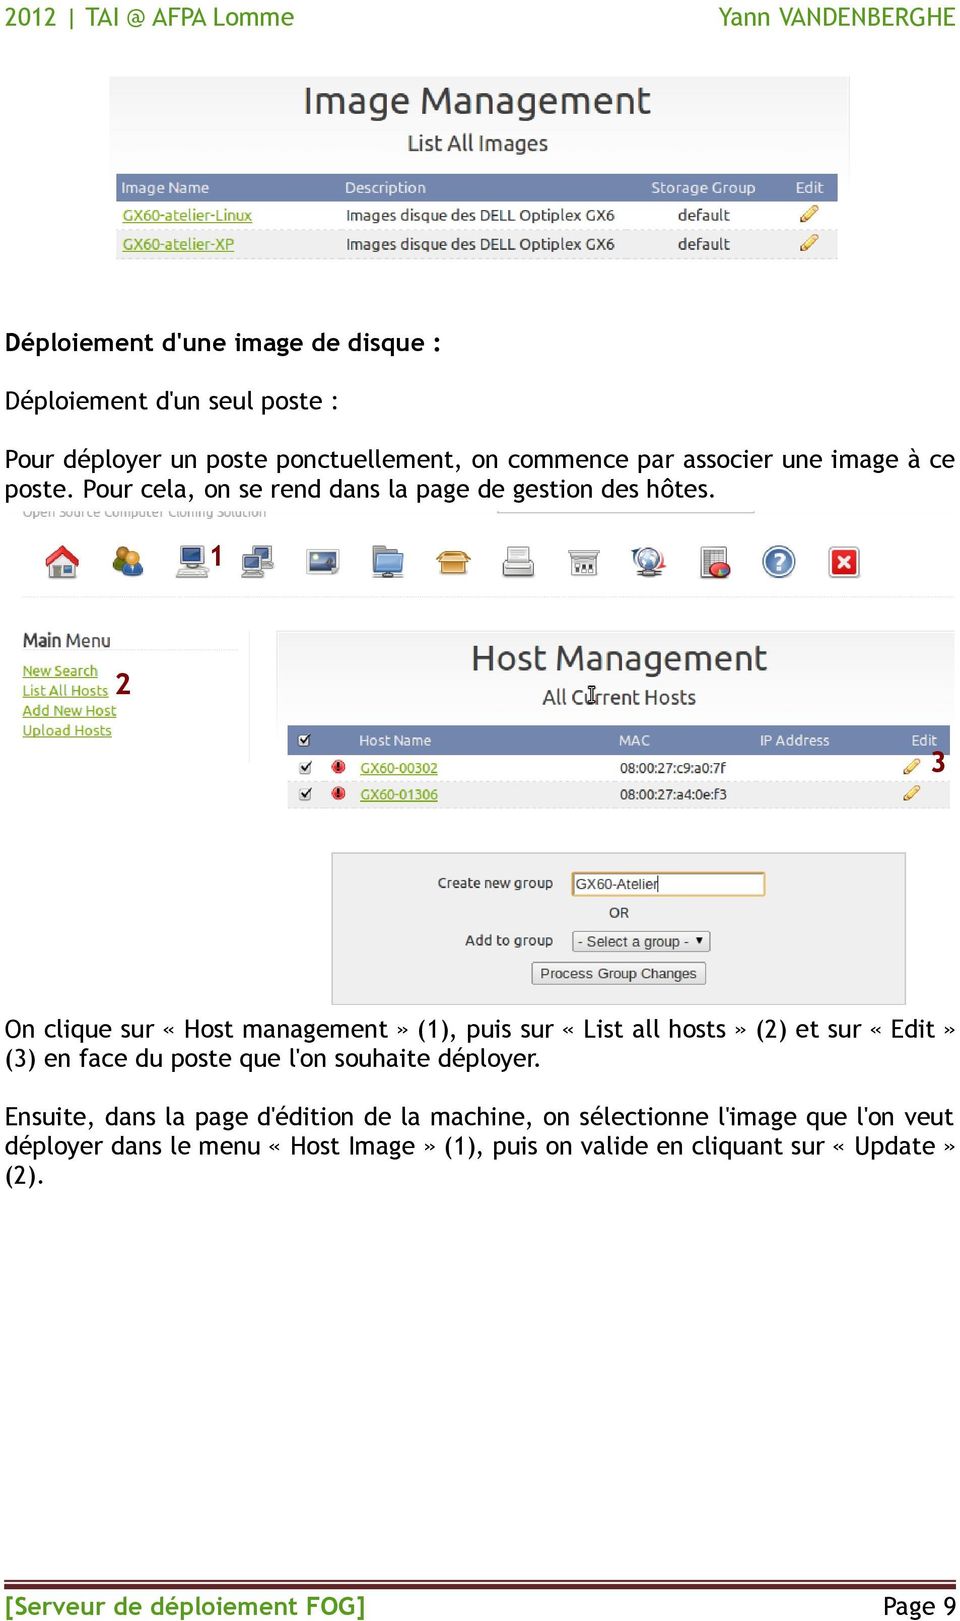 On clique sur «Host management» (), puis sur «List all hosts» () et sur «Edit» () en face du poste que l'on souhaite déployer.